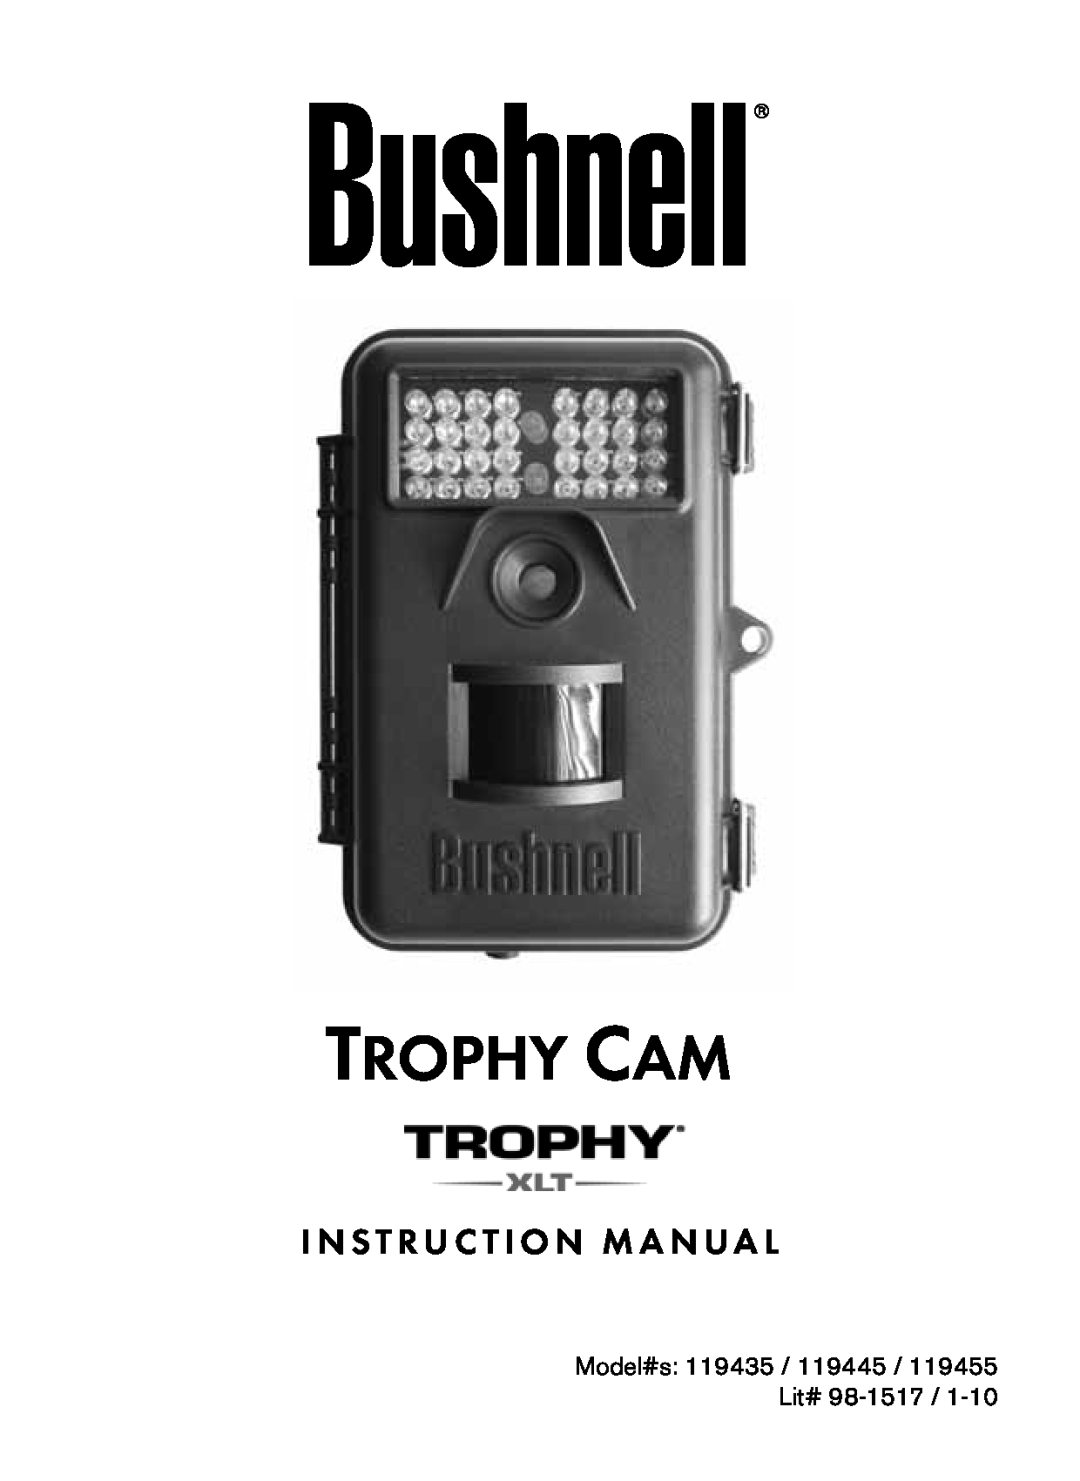 Bushnell 119445, 119455, 119435 instruction manual Trophy Cam, I N S T R U C T I O N M A N U A L 